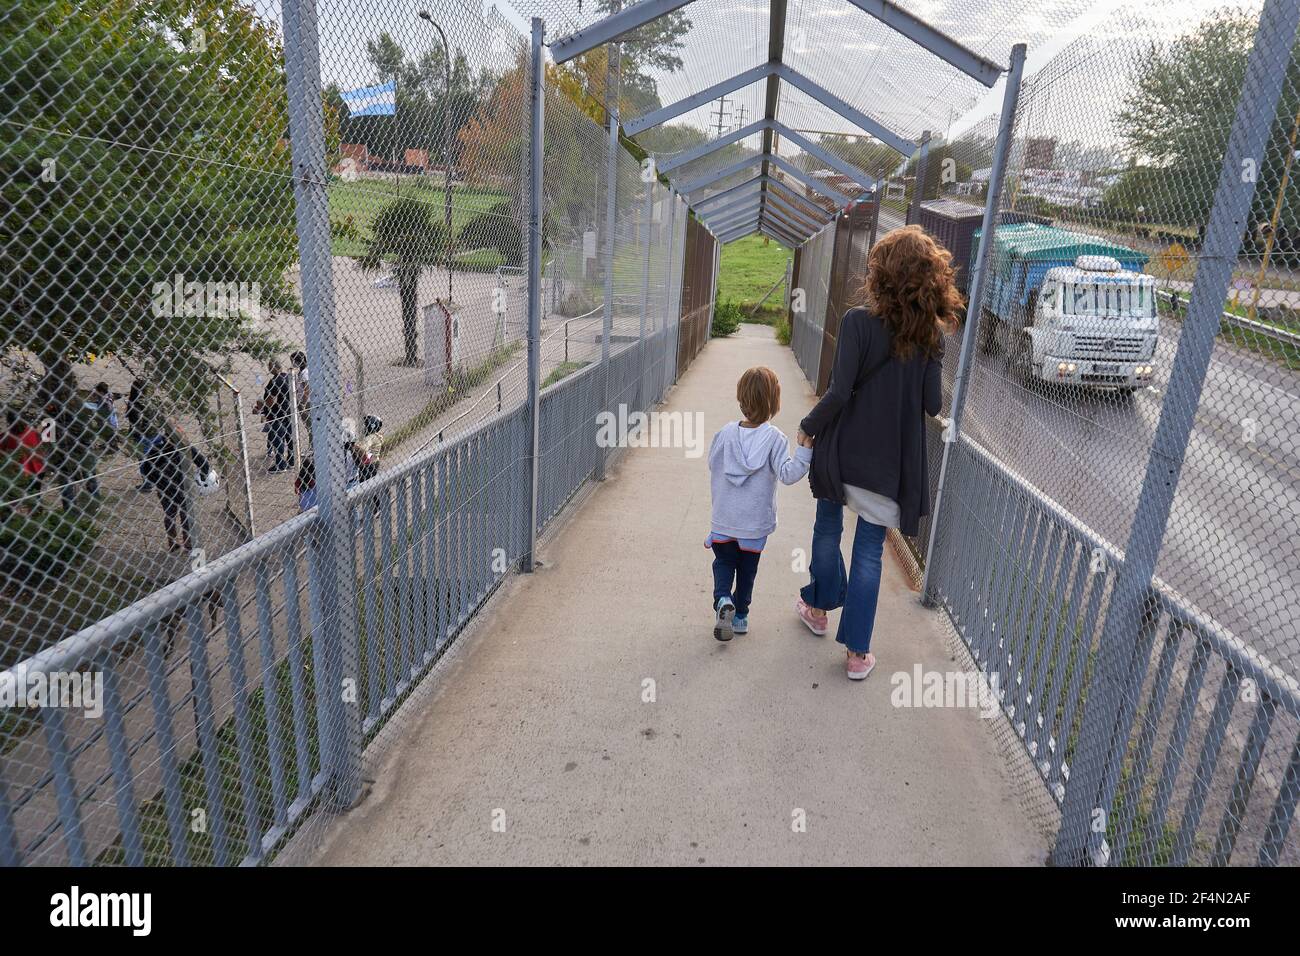 Une mère et un enfant traversent un pont piétonnier sur une route nationale tout en allant à l'école.après une année d'école en ligne ou aucune école du tout en raison de la pandémie du coronavirus, les enfants d'âge préscolaire retournent à l'école en Argentine. Banque D'Images